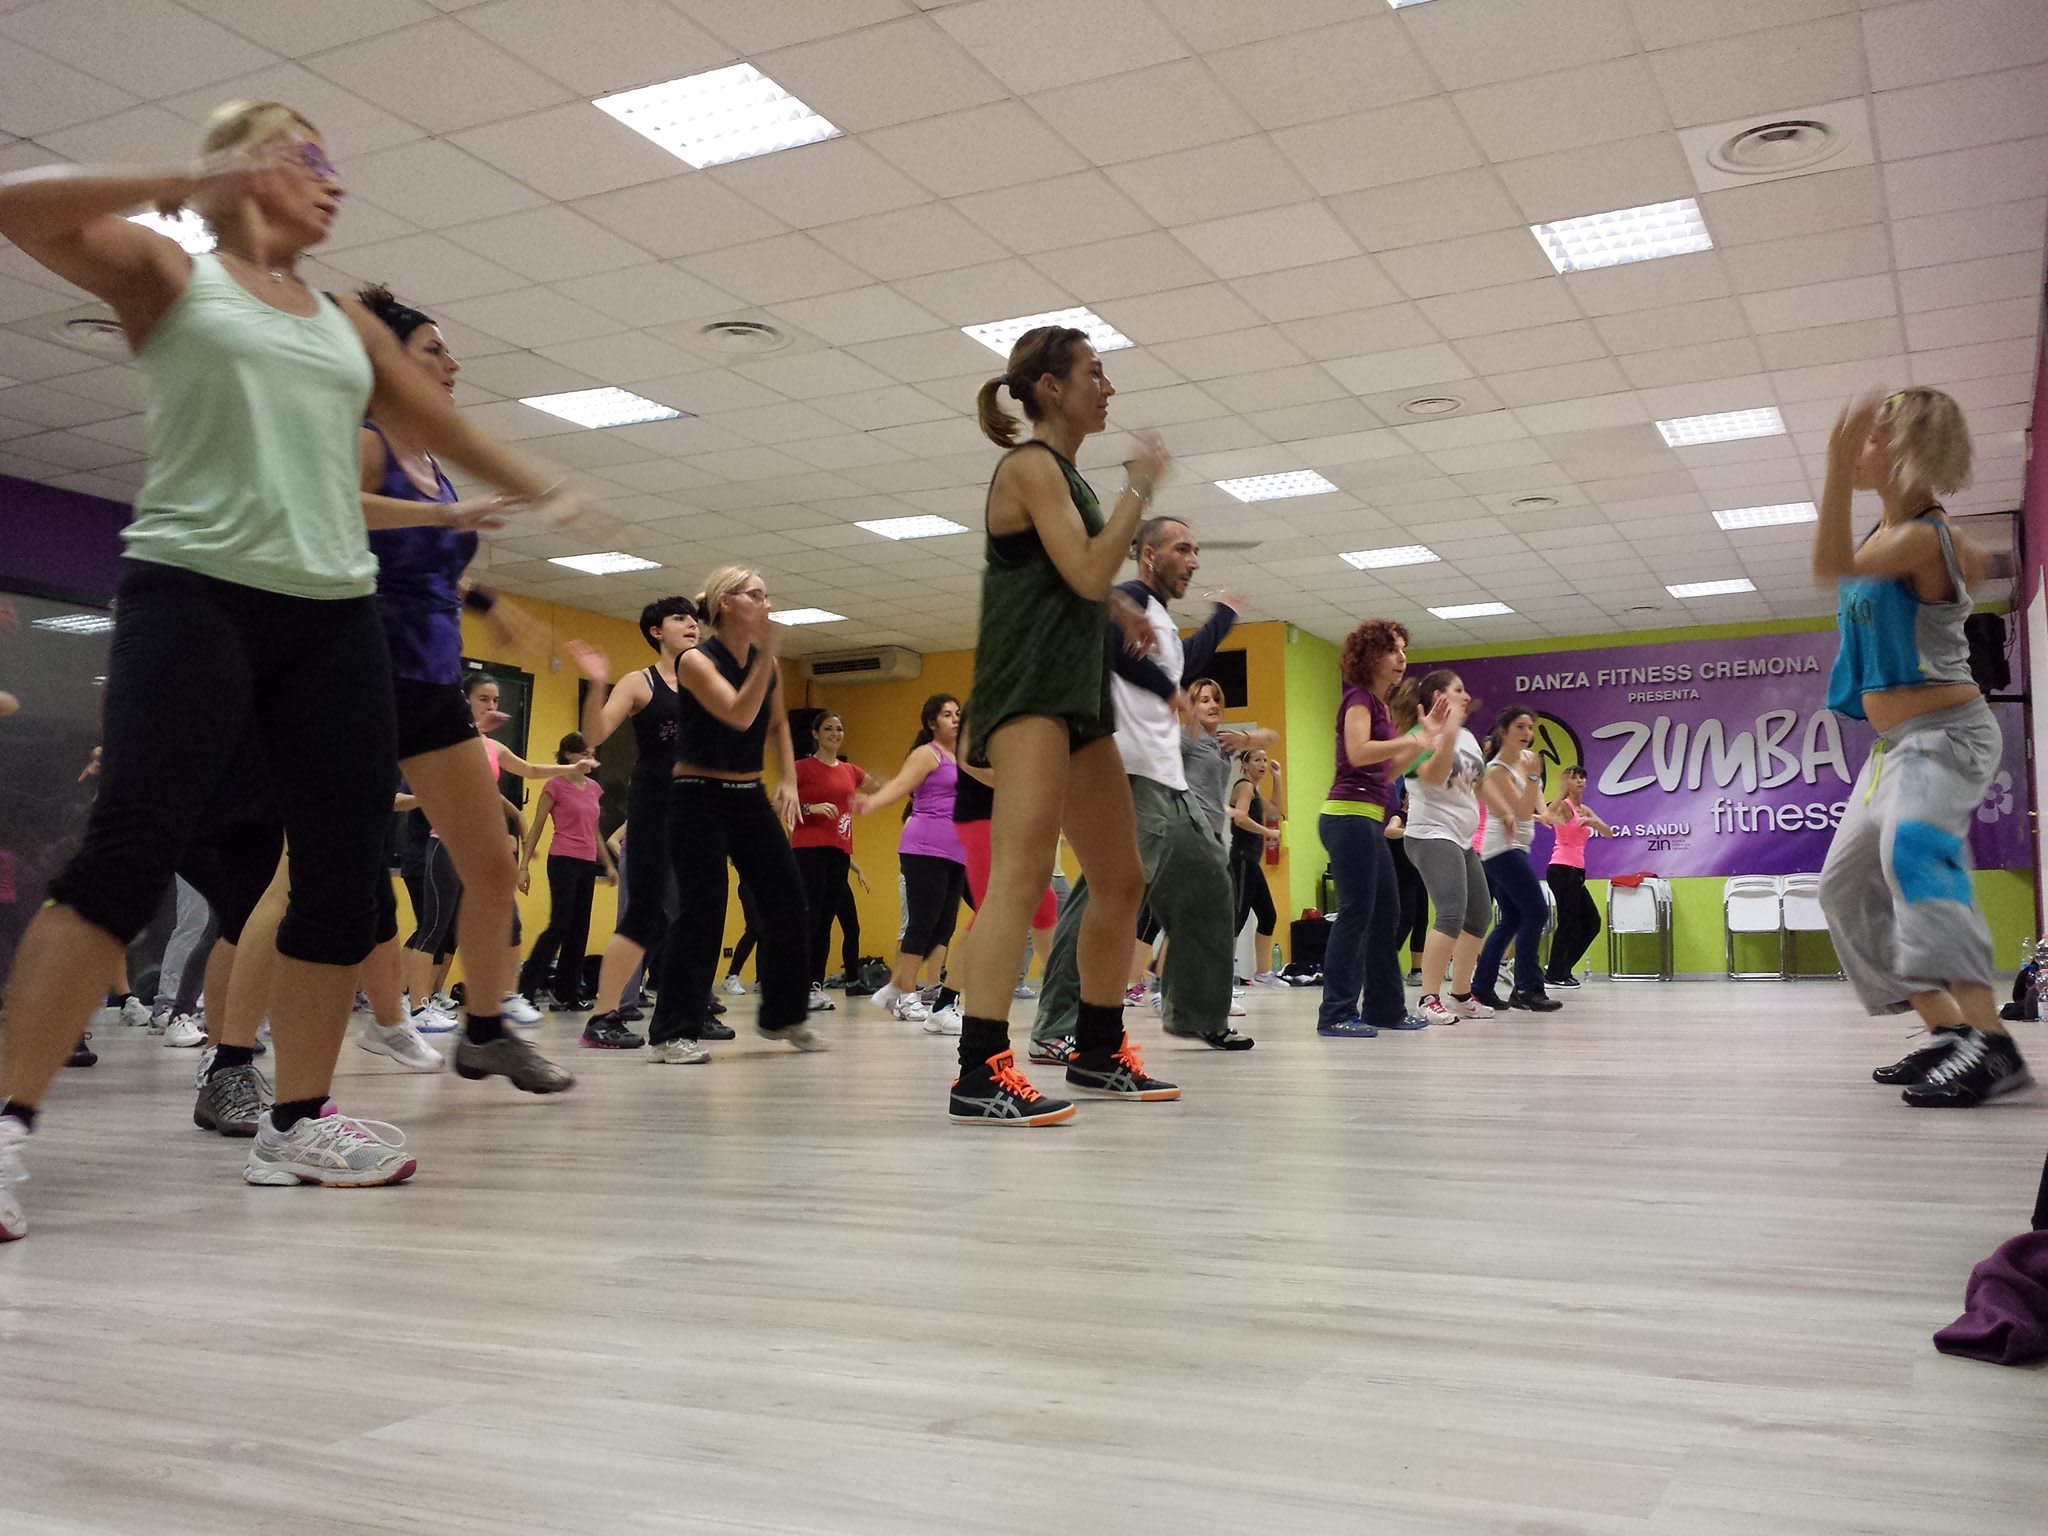 Danza Fitness Studio